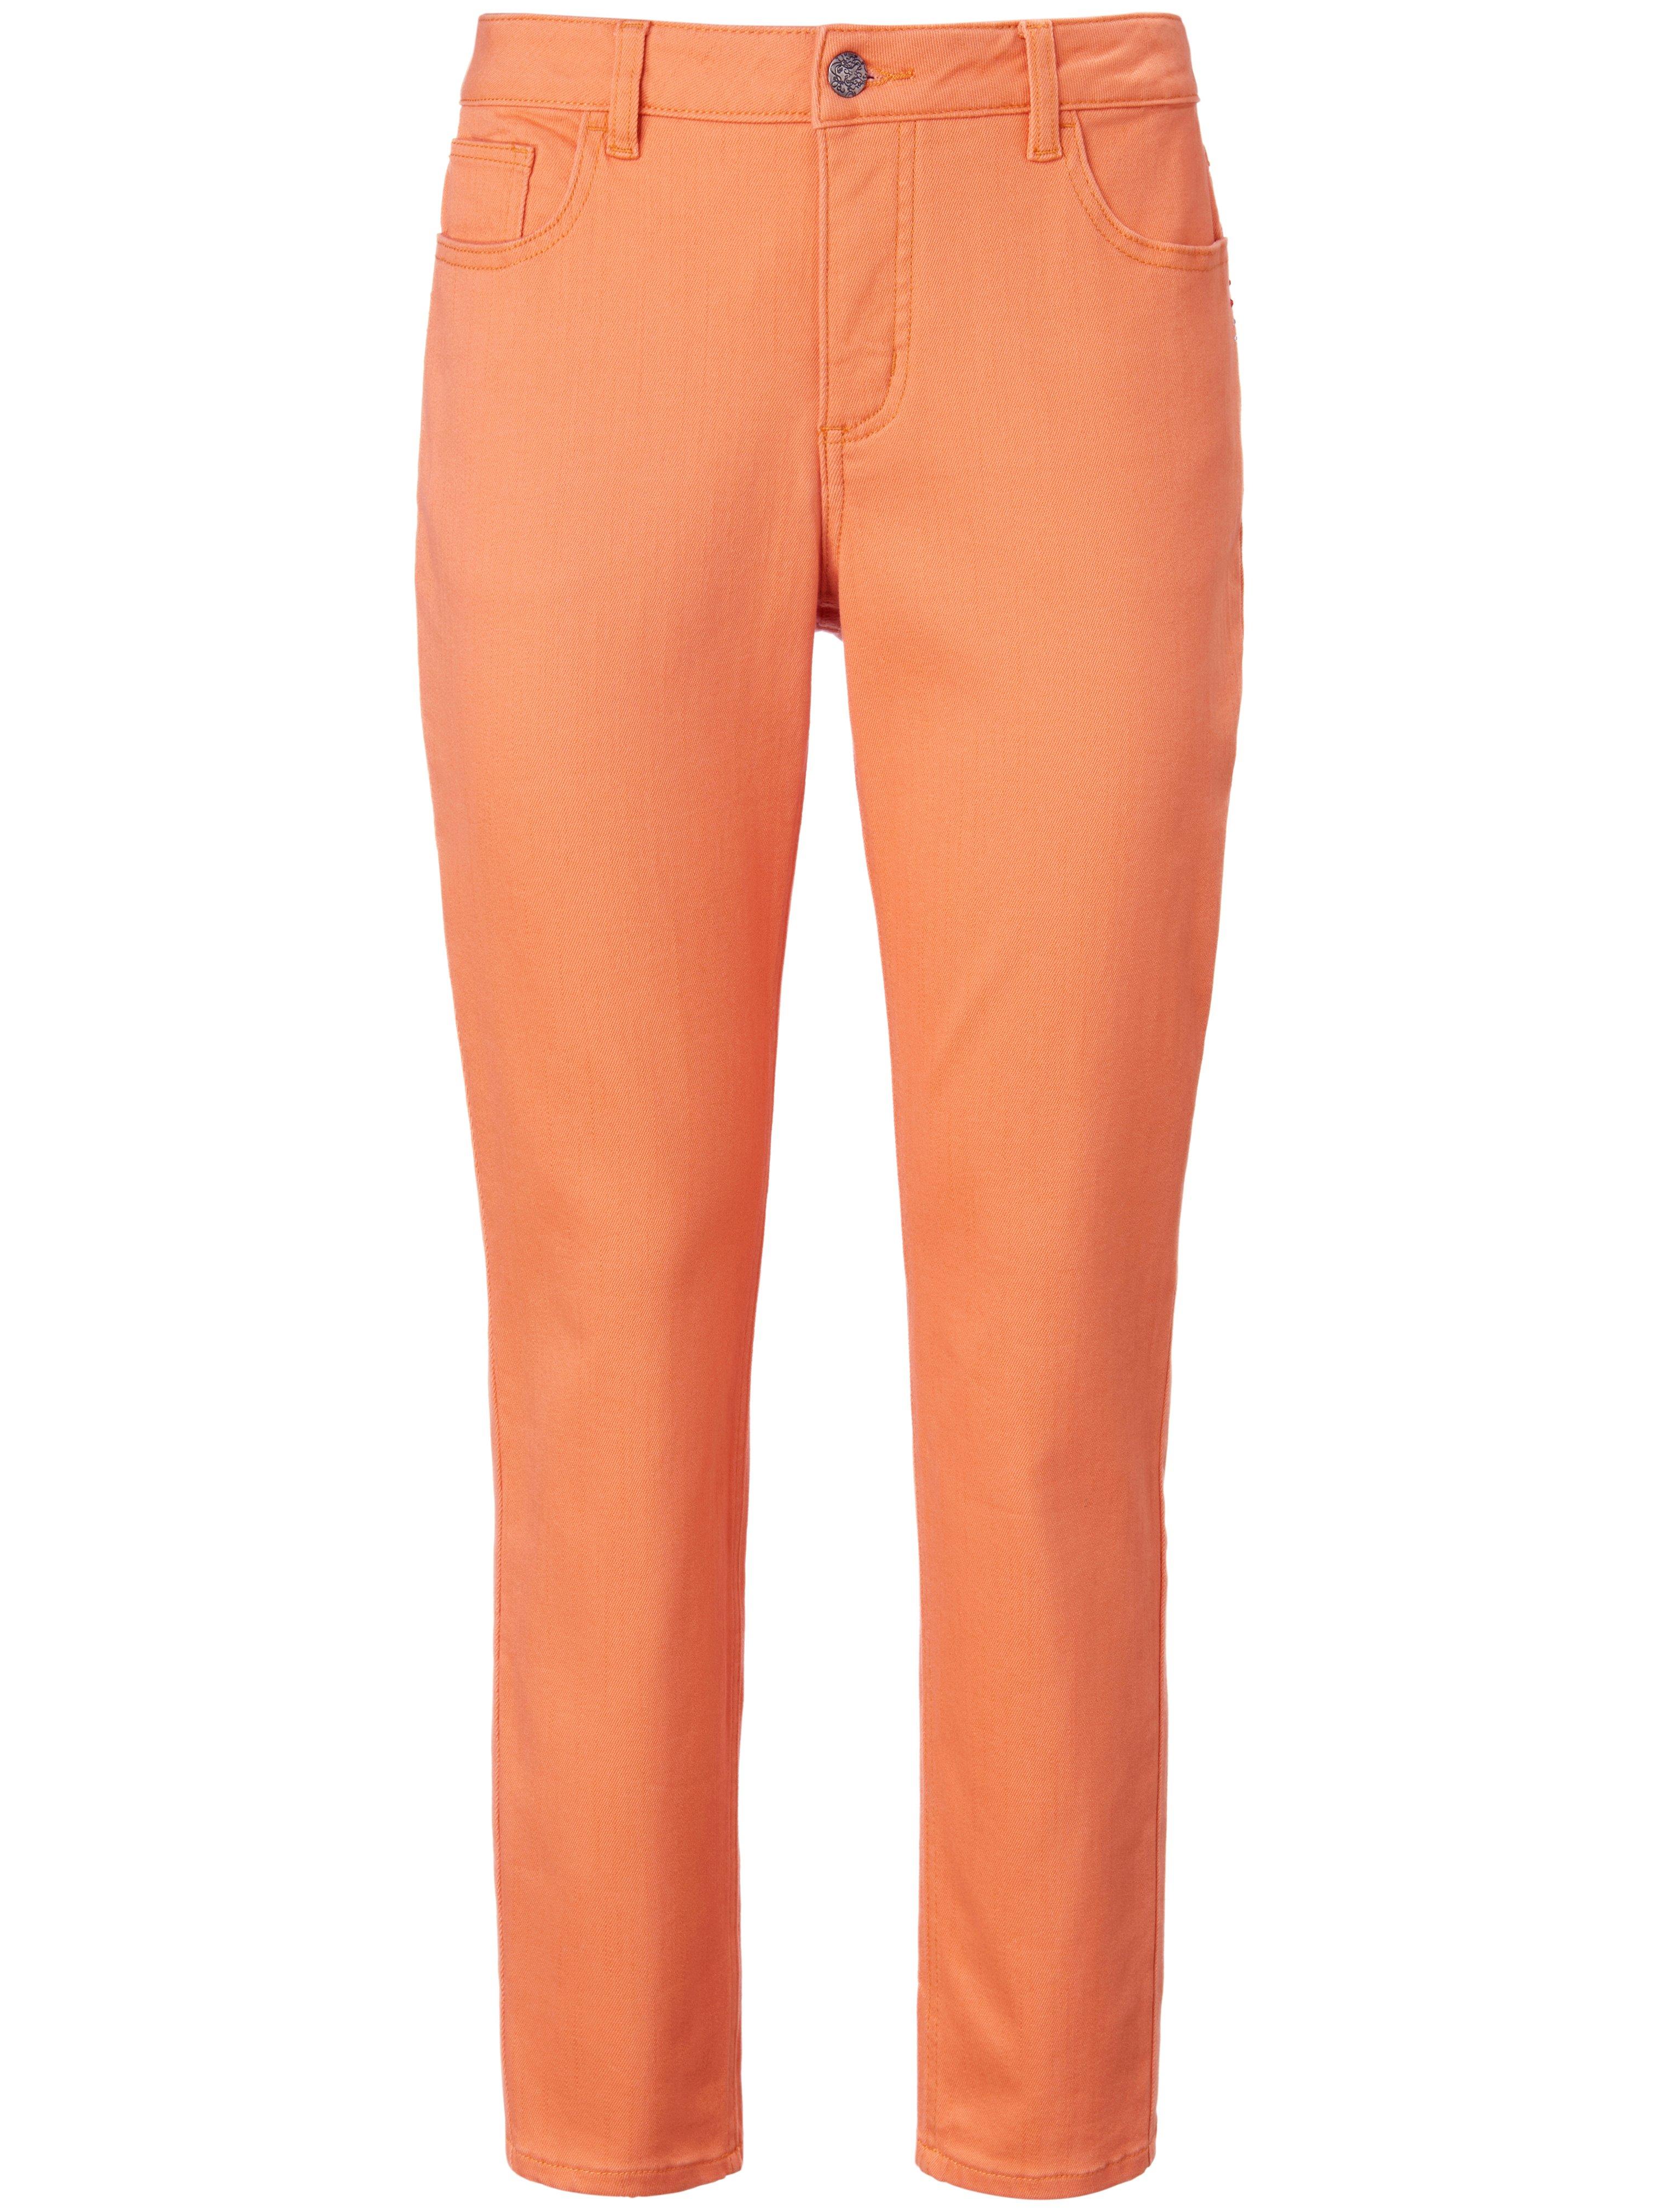 Enkellange jeans smalle pijpen Van MYBC oranje